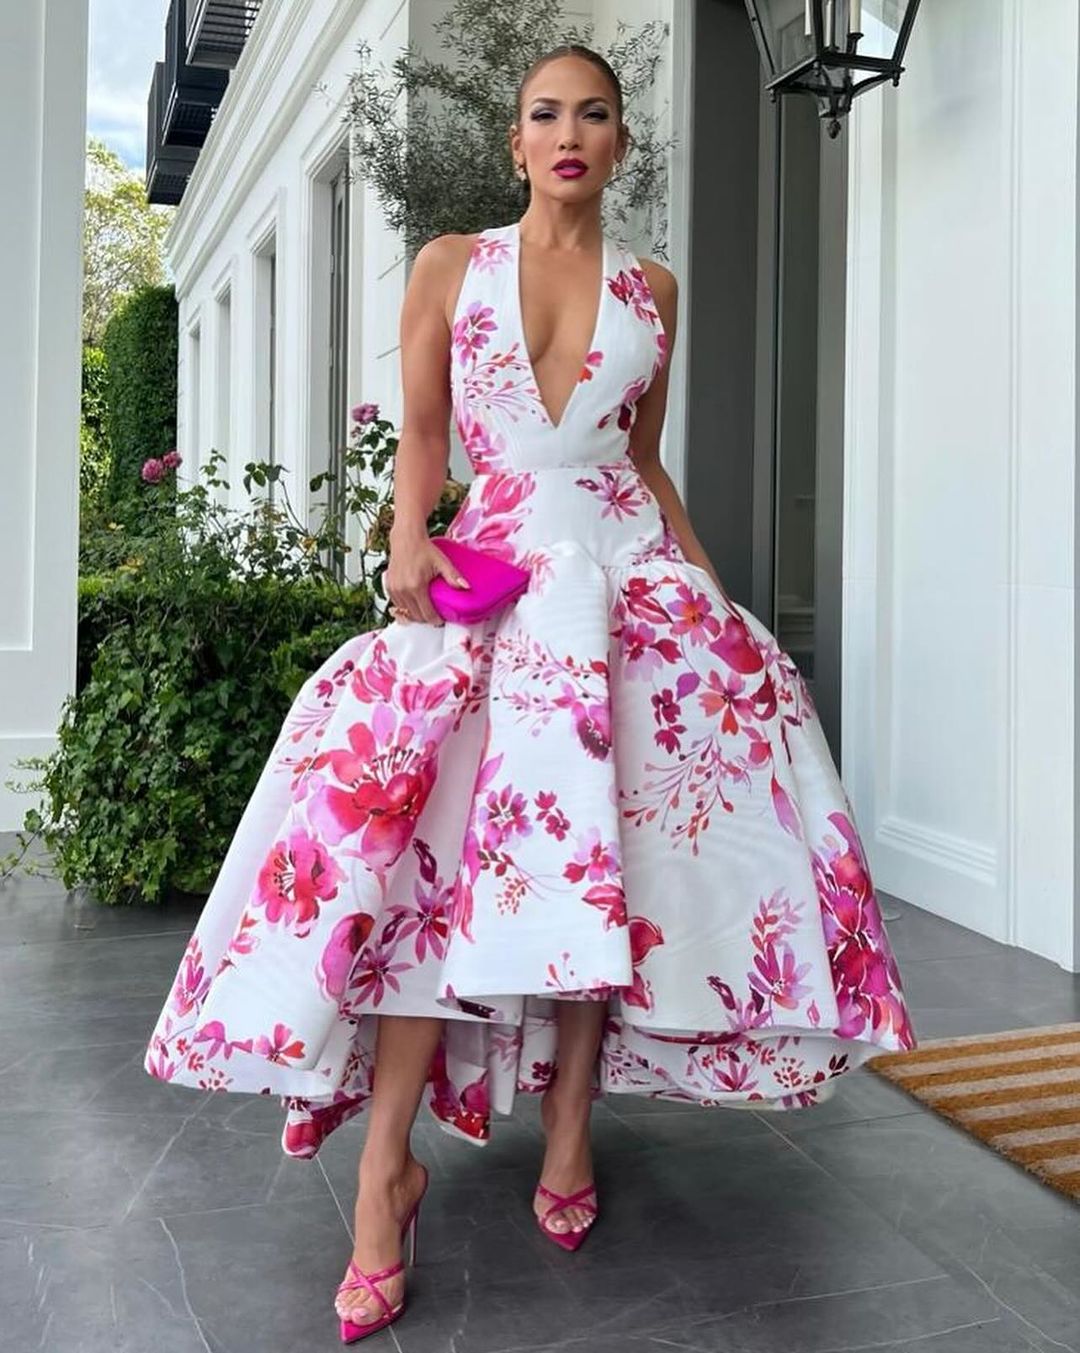 Декольте до талии и цвет фуксии: Дженнифер Лопес в трендовом платье произвела фурор 